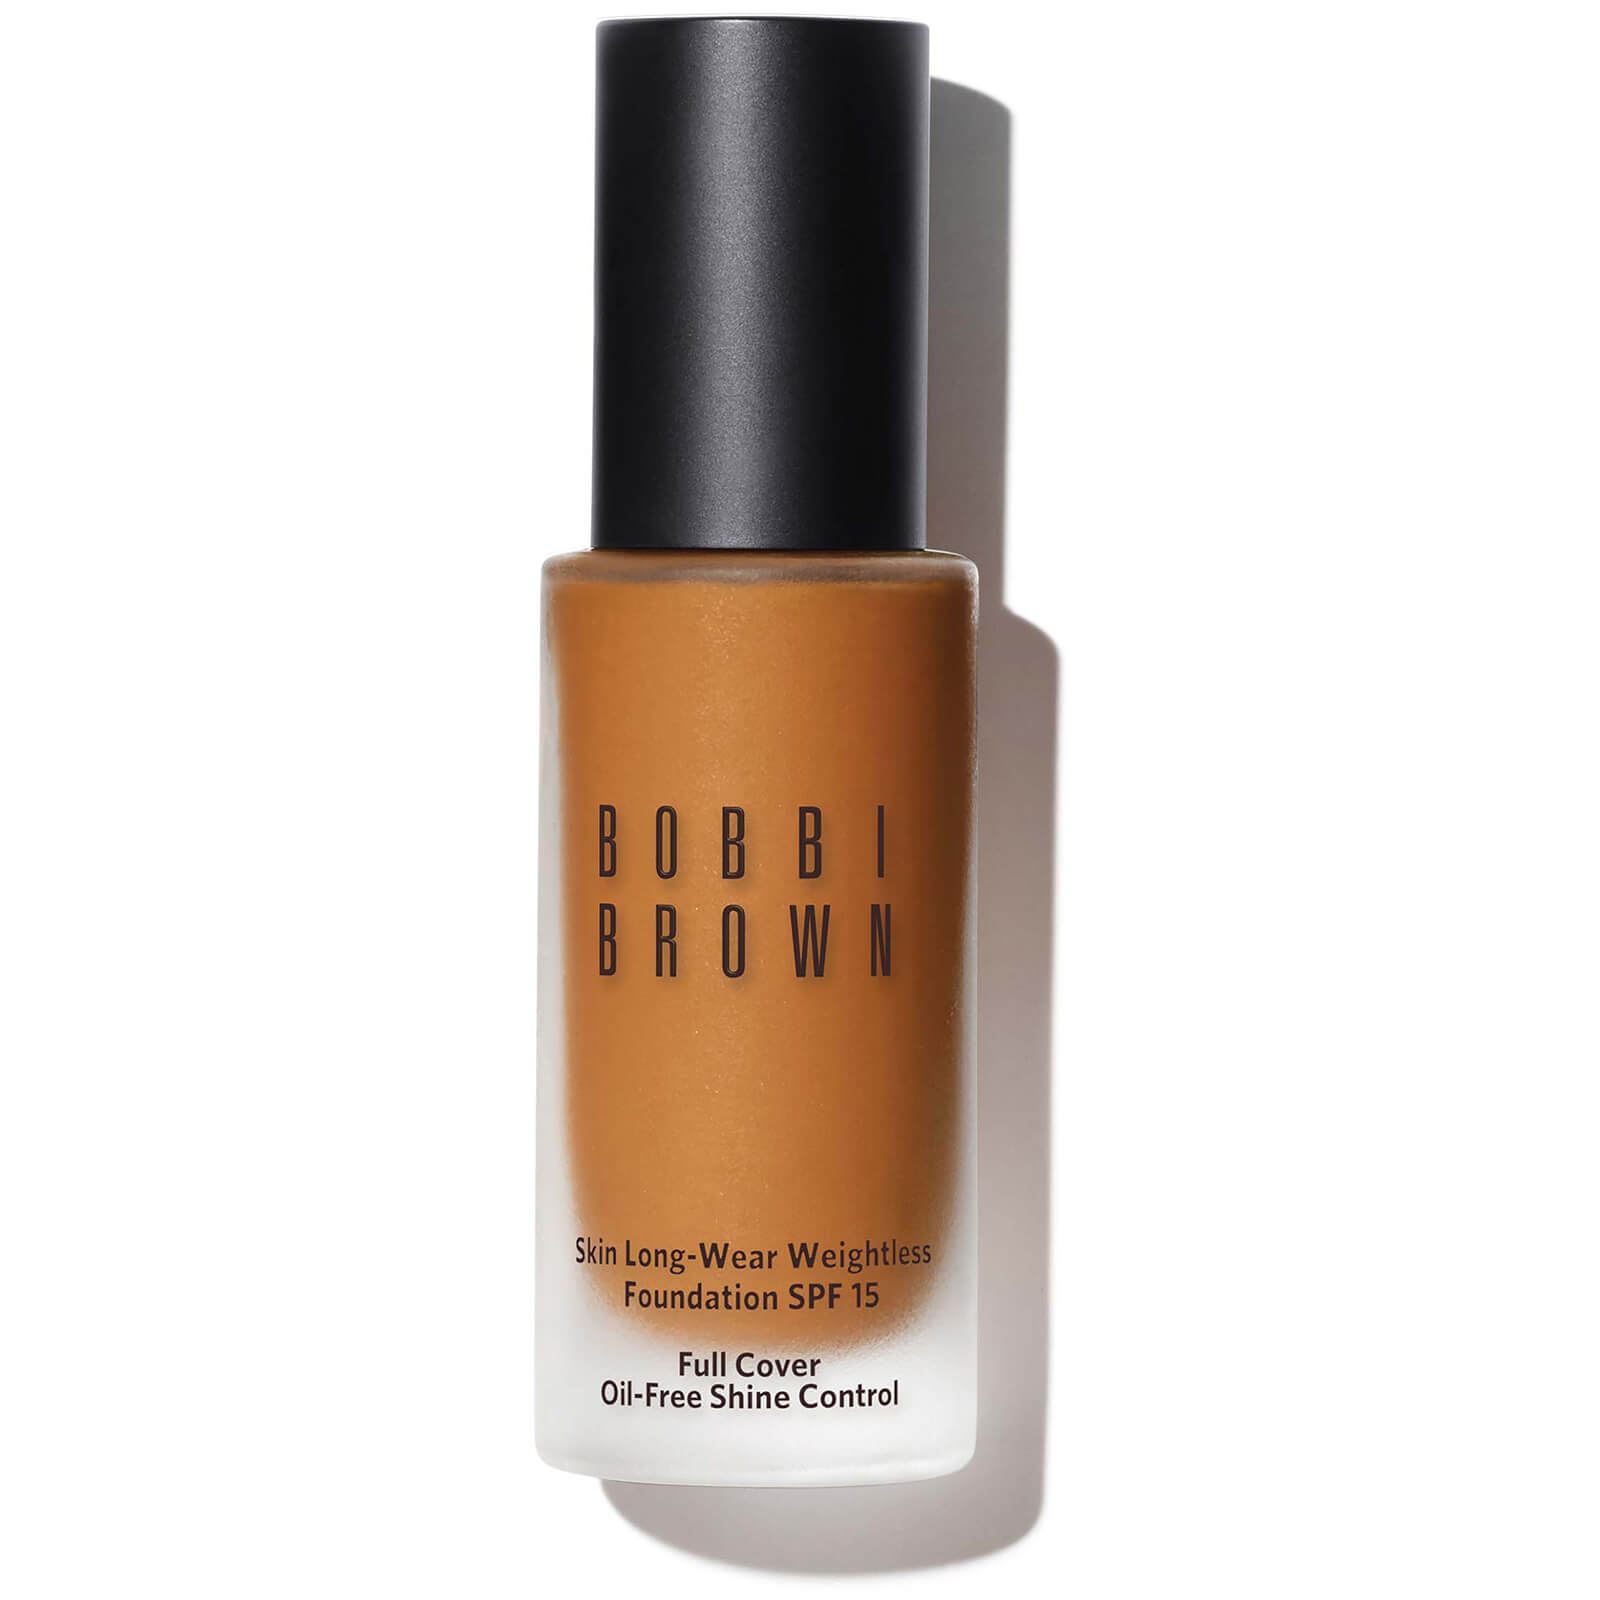 Bobbi Brown Skin Long-Wear Weightless Foundation SPF 15 (verschiedene Farbtöne) - Neutral Golden von Bobbi Brown